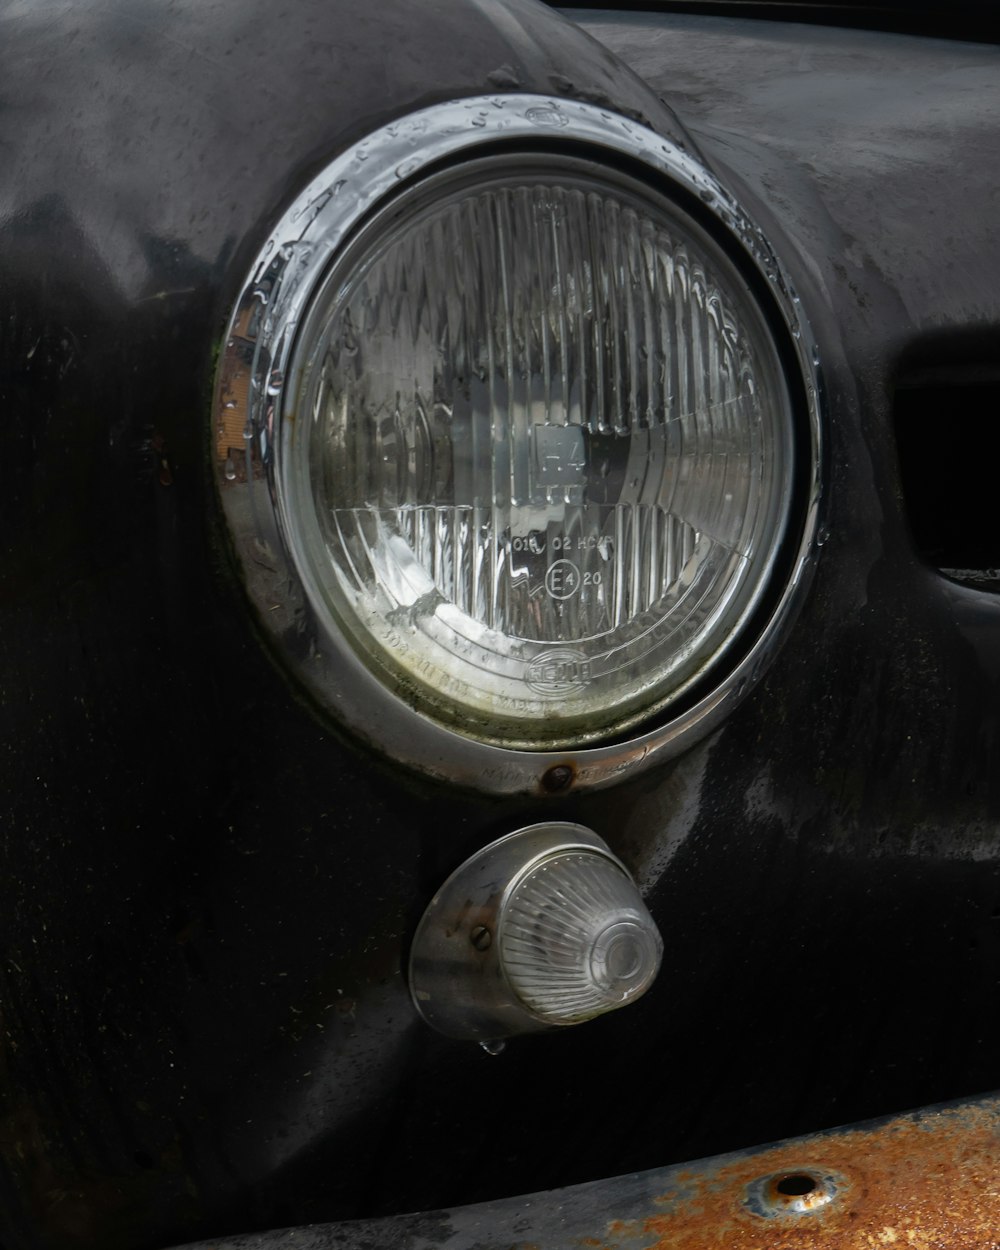 um close up de um farol em um carro antigo